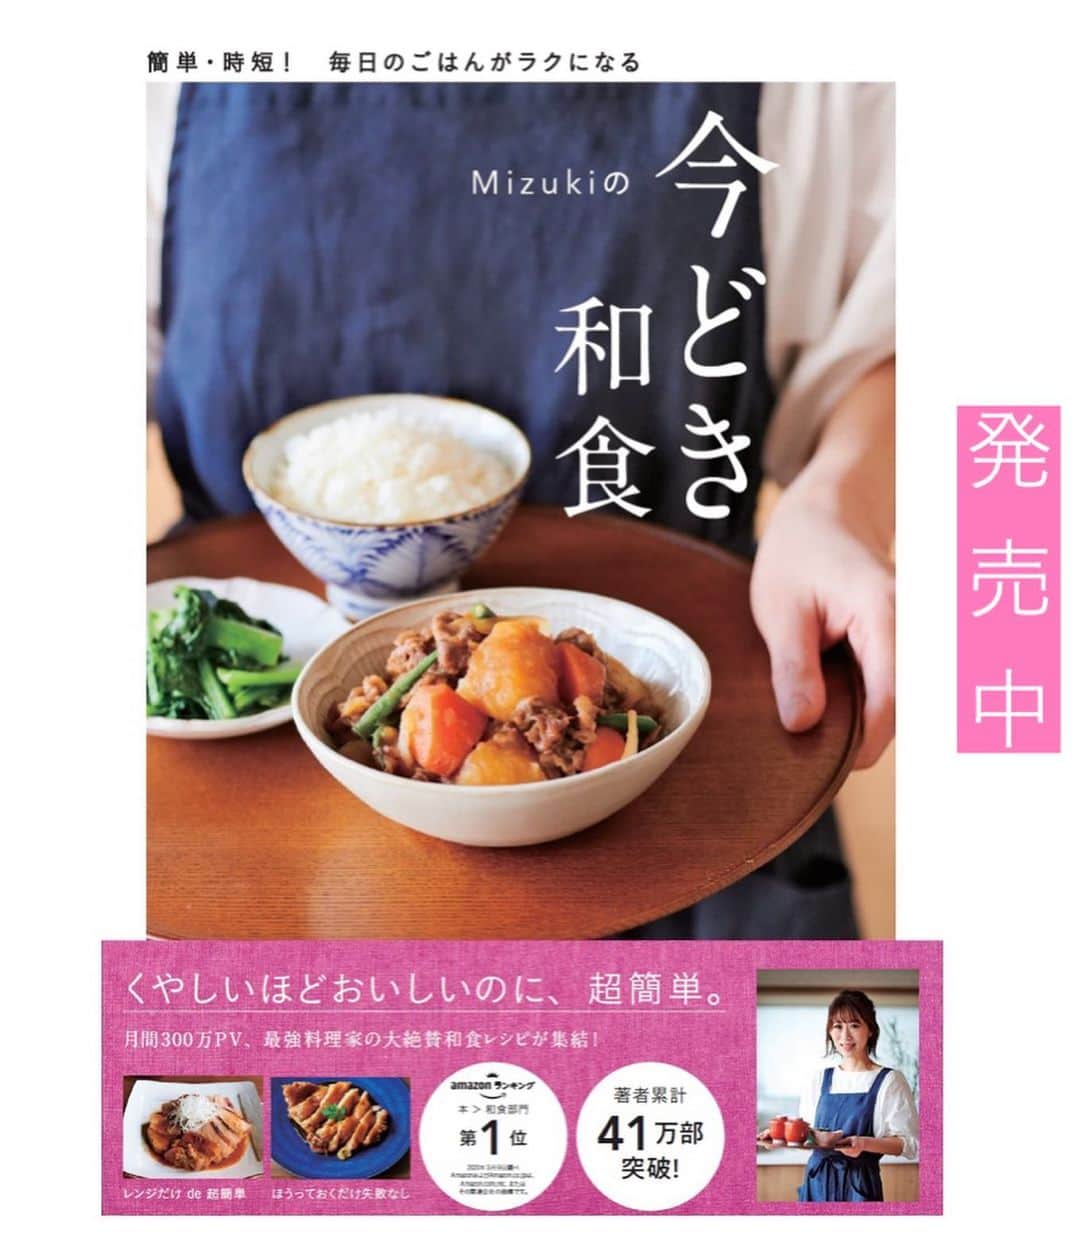 Mizuki【料理ブロガー・簡単レシピ】さんのインスタグラム写真 - (Mizuki【料理ブロガー・簡単レシピ】Instagram)「・﻿ 【#レシピ 】ーーーーーーー﻿ 漬けて焼くだけ！本格焼豚﻿ ーーーーーーーーーーーーー﻿ ﻿ ﻿ ﻿ おはようございます(*^^*)﻿ ﻿ 今日はお正月料理にもおすすめの﻿ 焼豚をご紹介させていただきます♩﻿ 一見手間がかかりそうですが﻿ 実は超〜簡単に作れますよ(*´艸`)﻿ ﻿ というのも﻿ \\漬けてやくだけ//﻿ ﻿ 甘めの調味料に漬け込み﻿ こんがりジューシーに仕上げました♩﻿ 今回は肩ロースを使用していますが﻿ ばら肉やヒレ肉でもOKです(*^^*)﻿ ﻿ そのまま食べるのはもちろん﻿ ラーメンのトッピングや焼豚丼﻿ チャーハンの具にしても最高ですよ〜♡﻿ ﻿ ﻿ ﻿ ＿＿＿＿＿＿＿＿＿＿＿＿＿＿＿＿＿＿＿＿﻿ 【4人分】﻿ 豚かたまり肉(肩ロース)...400〜500g﻿ ●醤油...60ml﻿ ●砂糖...大4﻿ ●味噌・オイスターソース...各小1﻿ ●生姜チューブ...3cm﻿ ﻿ 1.豚肉は縦半分に切り、全体をフォークで刺す。●と共にポリ袋に入れてよく揉み、冷蔵庫で一晩漬ける。﻿ 2.クッキングシートを敷いた天板に、1を軽く汁気を切ってのせ、200度に予熱したオーブンで35分焼く。(焼き上がり10分前に残ったたれを塗るとしっかり味に&照りアップ！)﻿ ￣￣￣￣￣￣￣￣￣￣￣￣￣￣￣￣￣￣￣￣﻿ ﻿ ﻿ ﻿ 《ポイント》﻿ ♦︎ お好みの厚さにスライスして召し上がれ♩﻿ ♦︎今回は脂身のバランスがよい肩ロース肉を使用しています♩ばら肉で作るとよりジューシーに、ヒレ肉だとヘルシーな仕上がりに♩﻿ ♦︎残ったら冷蔵で4日、冷凍で1カ月は保存可能です♩﻿ ﻿ ﻿ ﻿ ﻿ ﻿ ﻿ 今日はクリスマスイブですね〜🎄✨🎁﻿ 皆さんが素敵な時間を過ごせますように💕﻿ ﻿ ﻿ ﻿ ﻿ ﻿ ﻿ ﻿ ﻿ 📕新刊発売中📕﻿ 【ラクしておいしい！#1品晩ごはん 】﻿ ￣￣￣￣￣￣￣￣￣￣￣￣￣￣￣￣￣﻿ 私たちだってヘトヘトな日がある•••﻿ 毎日何品も作っていられない•••﻿ もうごはんに悩みたくない😢﻿ そんな時、1品ごはんはいかがでしょう？﻿ というご提案です✨﻿ ﻿ 【1品ごはん】は﻿ 副菜いらずで全てがシンプル！﻿ ￣￣￣￣￣￣￣￣￣￣￣￣￣￣￣￣￣￣﻿ 一品つくるだけでいいから﻿ 献立を考えなくてよし！﻿ ￣￣￣￣￣￣￣￣￣￣￣￣￣￣￣￣￣￣﻿ 悩まない、疲れない、﻿ 気力や時間がなくてもなんとかなる！﻿ ￣￣￣￣￣￣￣￣￣￣￣￣￣￣￣￣￣￣﻿ そんな頼りになる﻿ 便利なお助けごはんです☺️💕﻿ (ハイライトに🔗貼っています✨)﻿ ￣￣￣￣￣￣￣￣￣￣￣￣￣￣￣￣￣﻿ ﻿ ﻿ ﻿ ﻿ ﻿ ⭐️発売中⭐️﻿ ＿＿＿＿＿＿＿＿＿＿＿＿＿＿＿＿＿＿﻿ しんどくない献立、考えました♩﻿ \15分でいただきます/﻿ 📕#Mizukiの2品献立 📕﻿ ﻿ 和食をもっとカジュアルに♩﻿ \毎日のごはんがラクになる/﻿ 📘#Mizukiの今どき和食 📘﻿ ﻿ ホケミレシピの決定版♩﻿ \はじめてでも失敗しない/﻿ 📙ホットケーキミックスのお菓子 📙﻿ ﻿ NHKまる得マガジンテキスト☆﻿ ホットケーキミックスで﻿ 📗絶品おやつ&意外なランチ📗﻿ ￣￣￣￣￣￣￣￣￣￣￣￣￣￣￣￣￣￣﻿ ﻿ ﻿ ﻿ ＿＿＿＿＿＿＿＿＿＿＿＿＿＿＿＿＿＿﻿ レシピを作って下さった際や﻿ レシピ本についてのご投稿には﻿ タグ付け( @mizuki_31cafe )して﻿ お知らせいただけると嬉しいです😊💕﻿ ￣￣￣￣￣￣￣￣￣￣￣￣￣￣￣￣￣￣﻿ ﻿ ﻿ ﻿ ﻿ #焼豚#チャーシュー#焼き豚#おせち料理#Mizuki#簡単レシピ#時短レシピ#節約レシピ#料理#フーディーテーブル#マカロニメイト#おうちごはん#デリスタグラマー#料理好きな人と繋がりたい#食べ物#料理記録#おうちごはんlover#写真好きな人と繋がりたい#foodpic#cooking#recipe#lin_stagrammer#foodporn#yummy#f52grams#本格焼豚m」12月24日 6時27分 - mizuki_31cafe